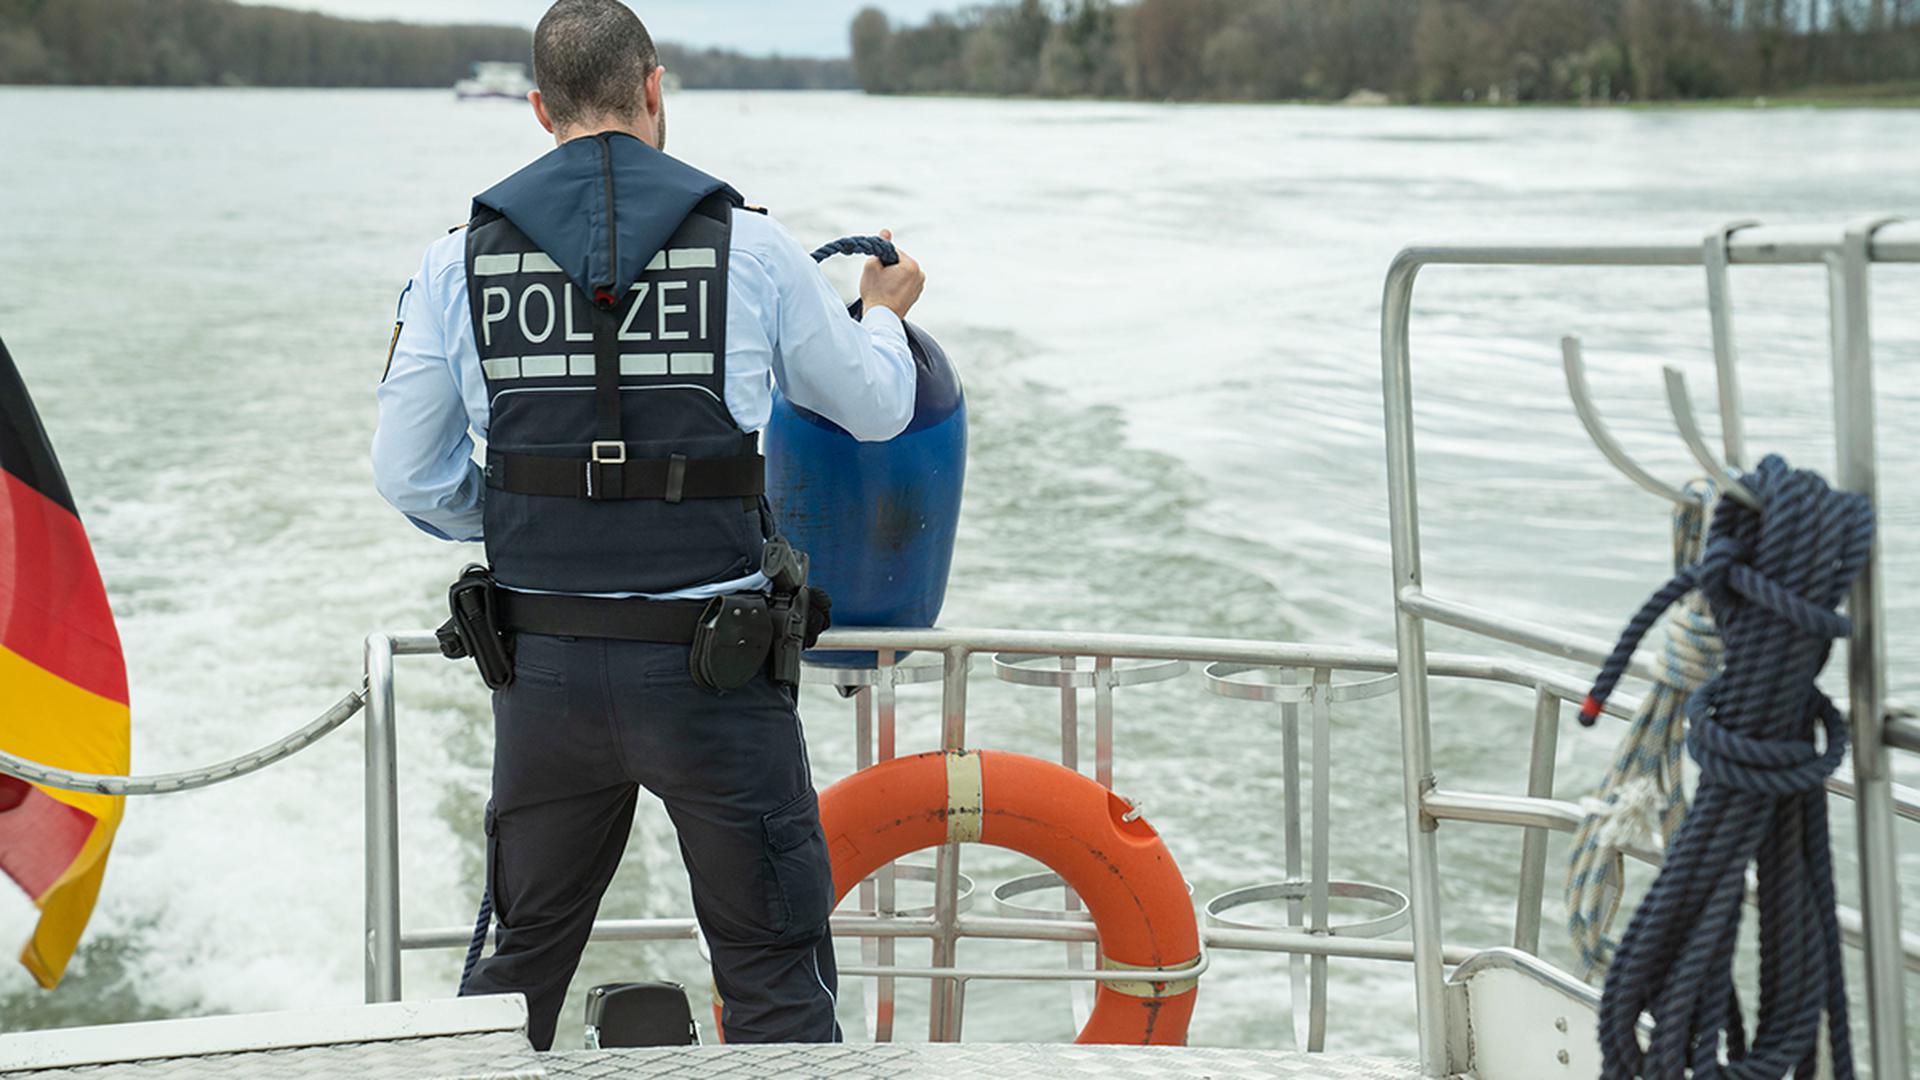 Die Wasserschutzpolizei hilft den Schiffsführern auch in Not, sie ist nicht nur ein Kontrollorgan.